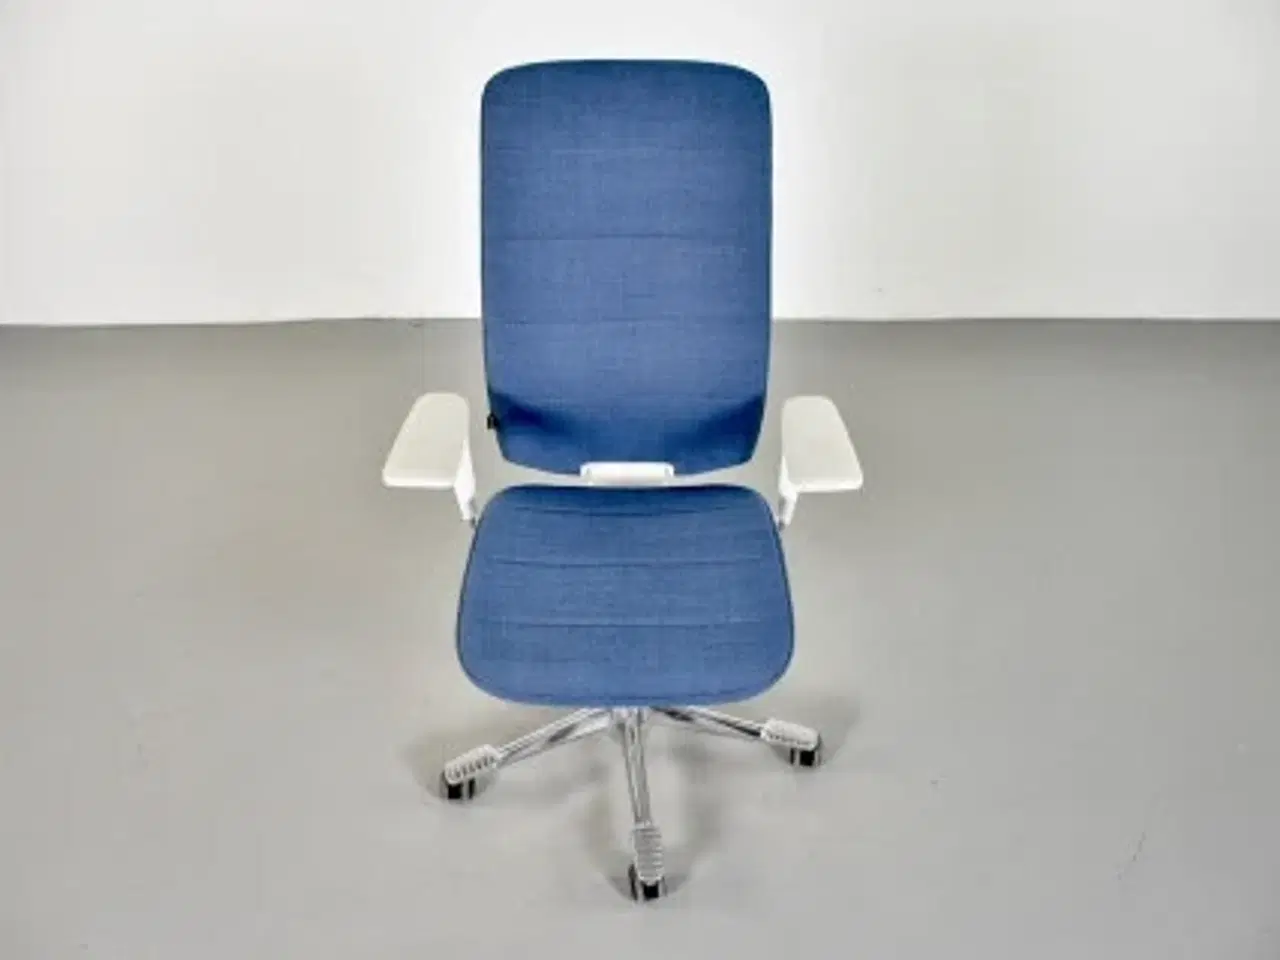 Billede 5 - Kinnarps capella white edition kontorstol med blåt polster og armlæn